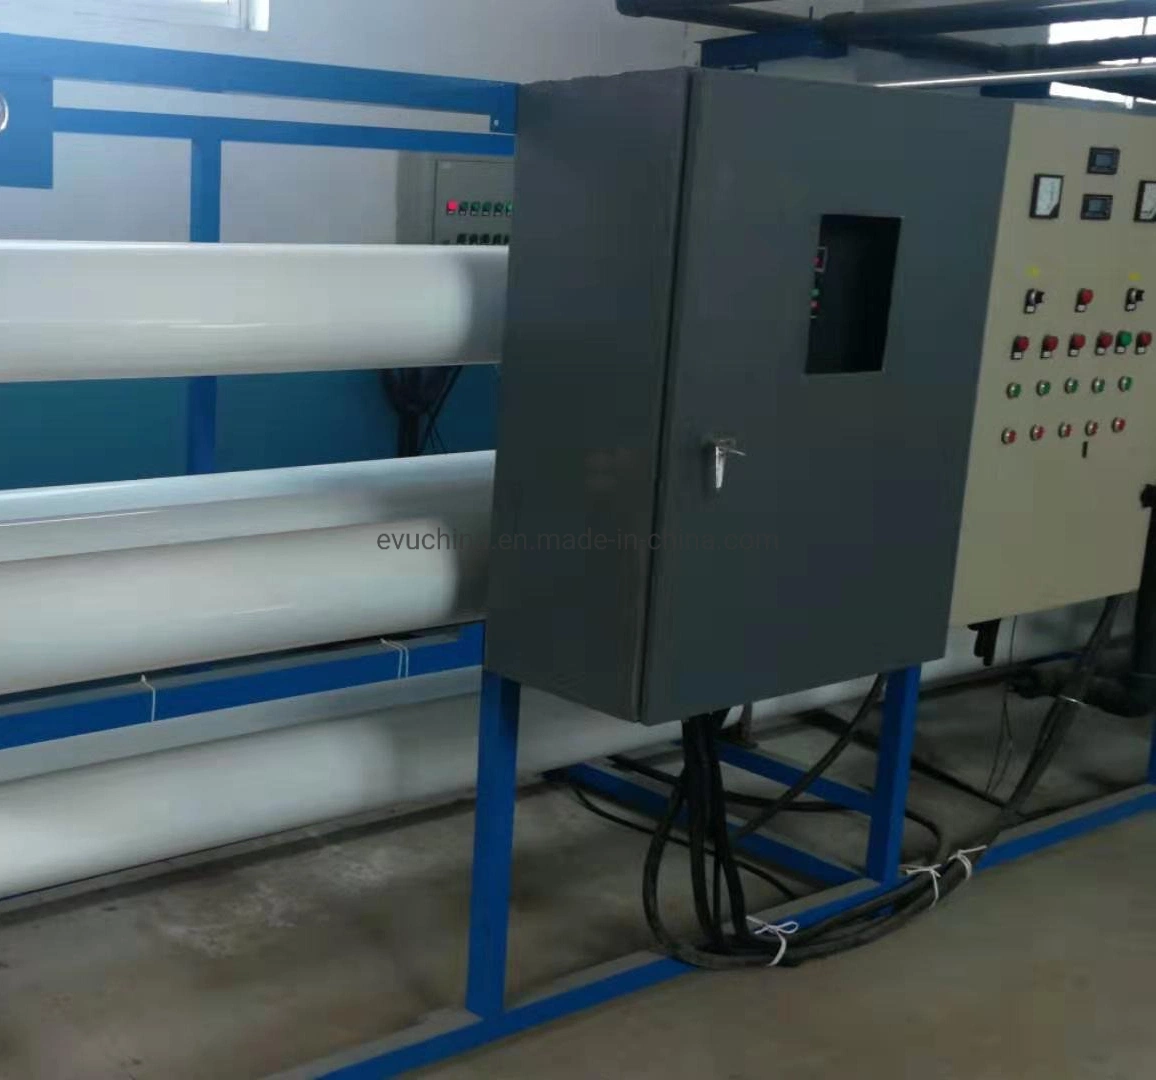 Sistema de ósmosis inversa RO Dispensador purificador Filtro de agua